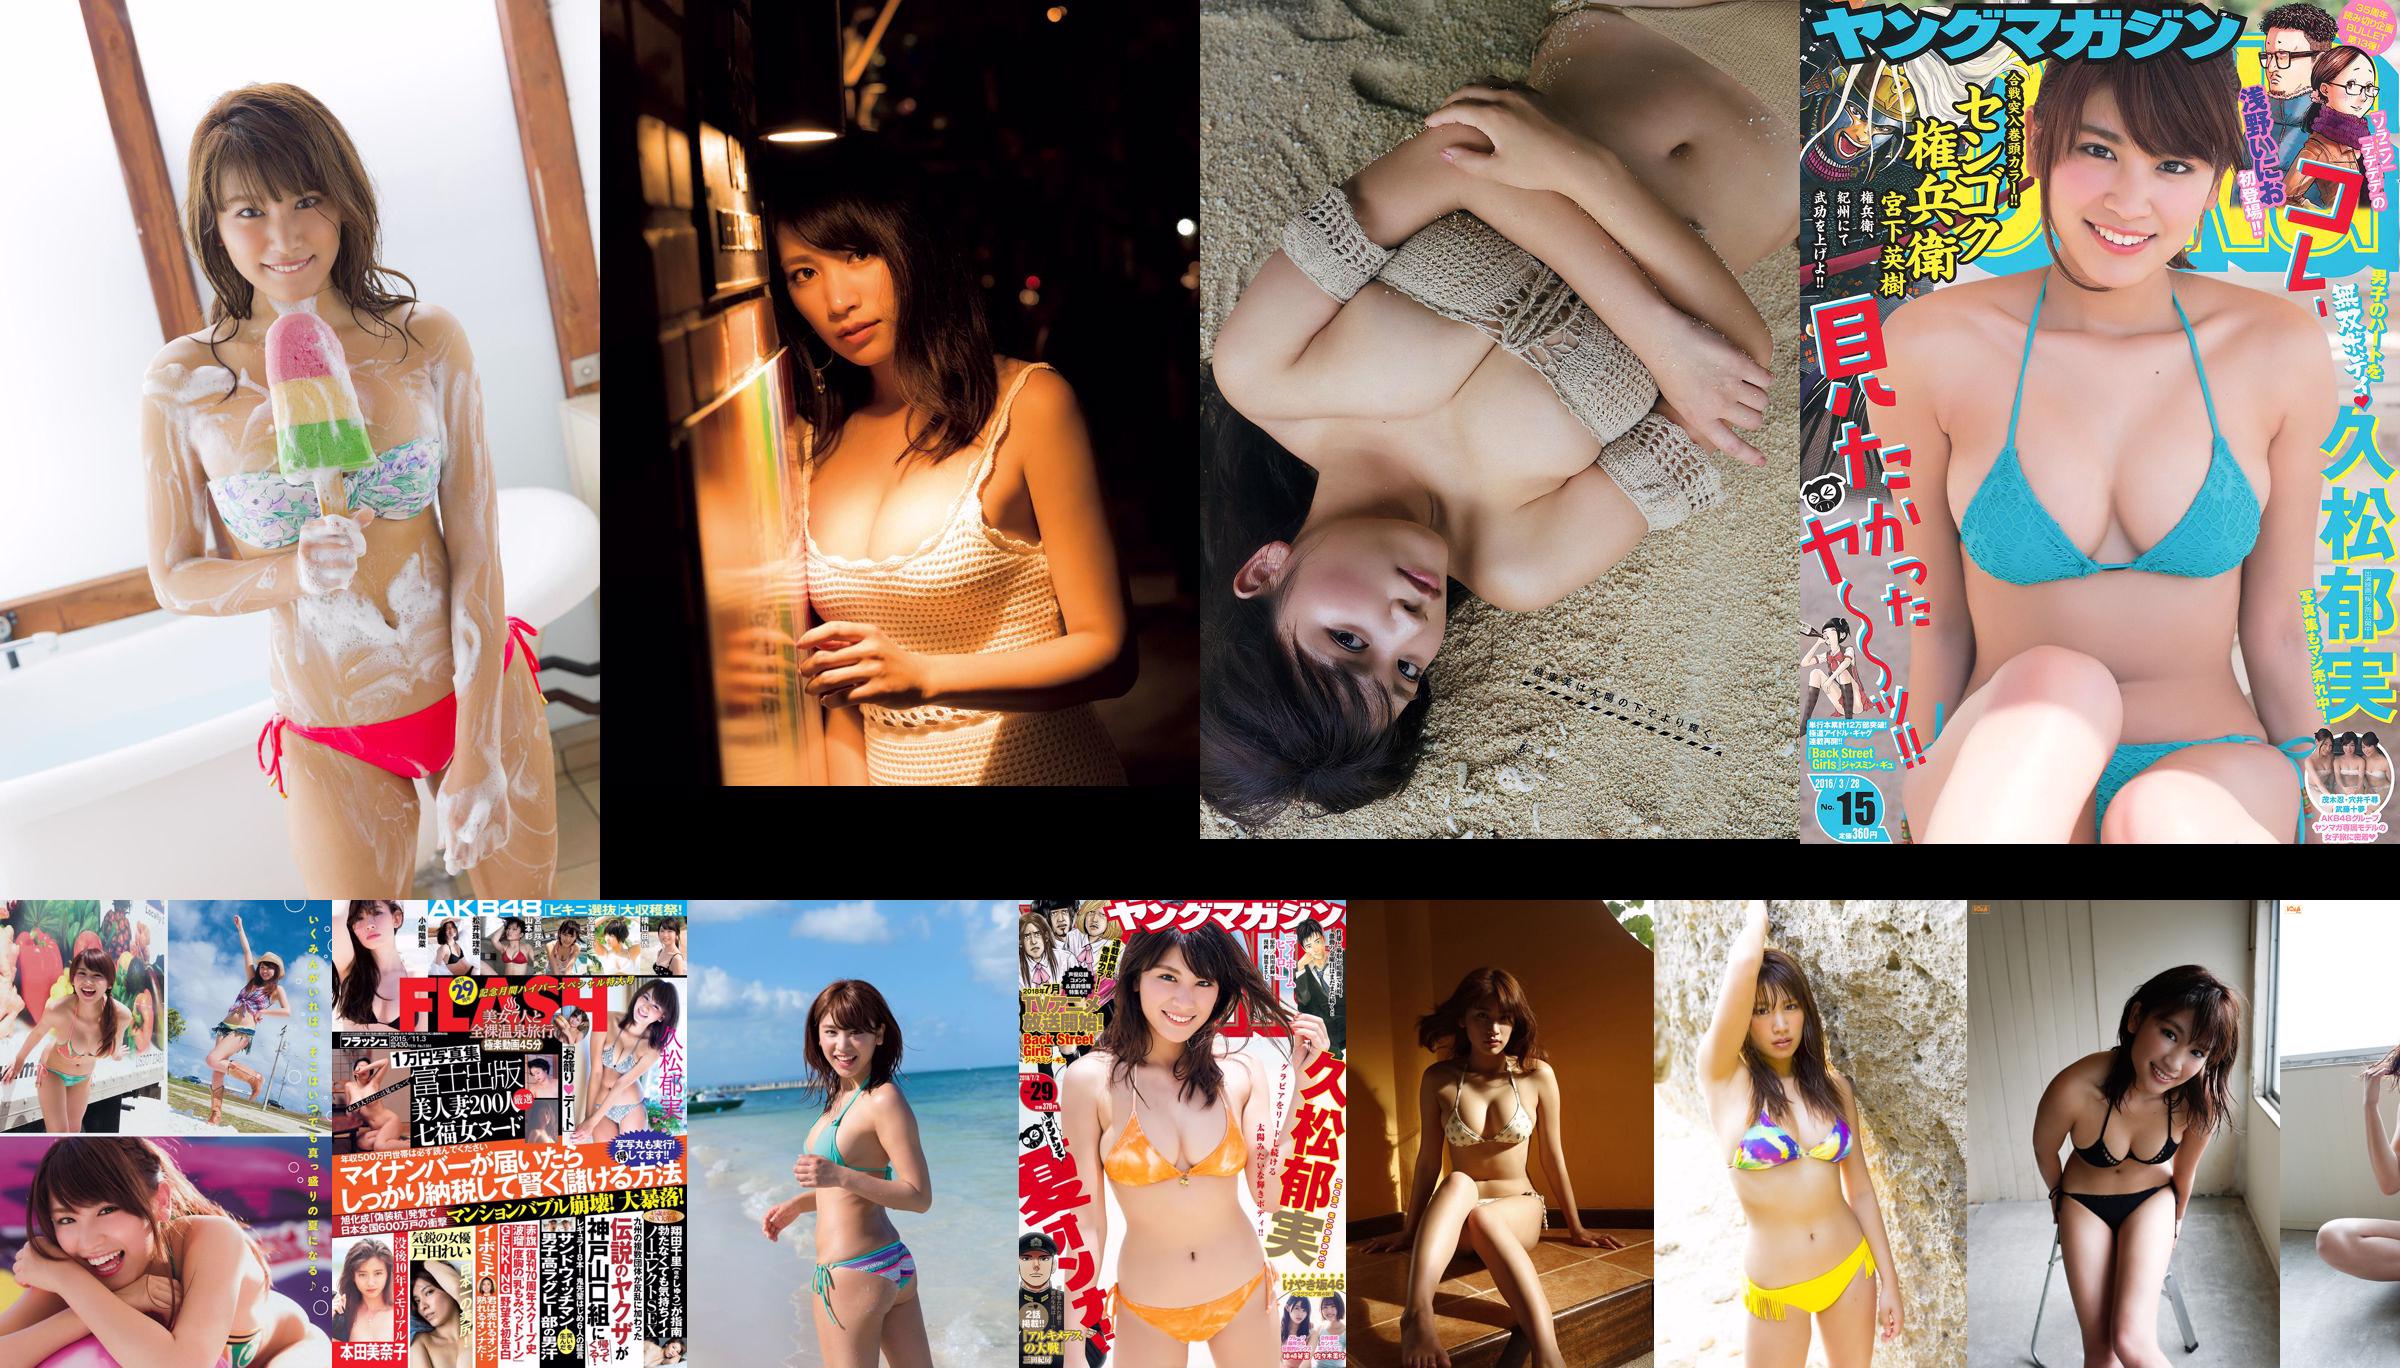 [Young Magazine] Ikumi Hisamatsu Hanami Natsume 2015 nr. 26 foto No.2b854f Pagina 5